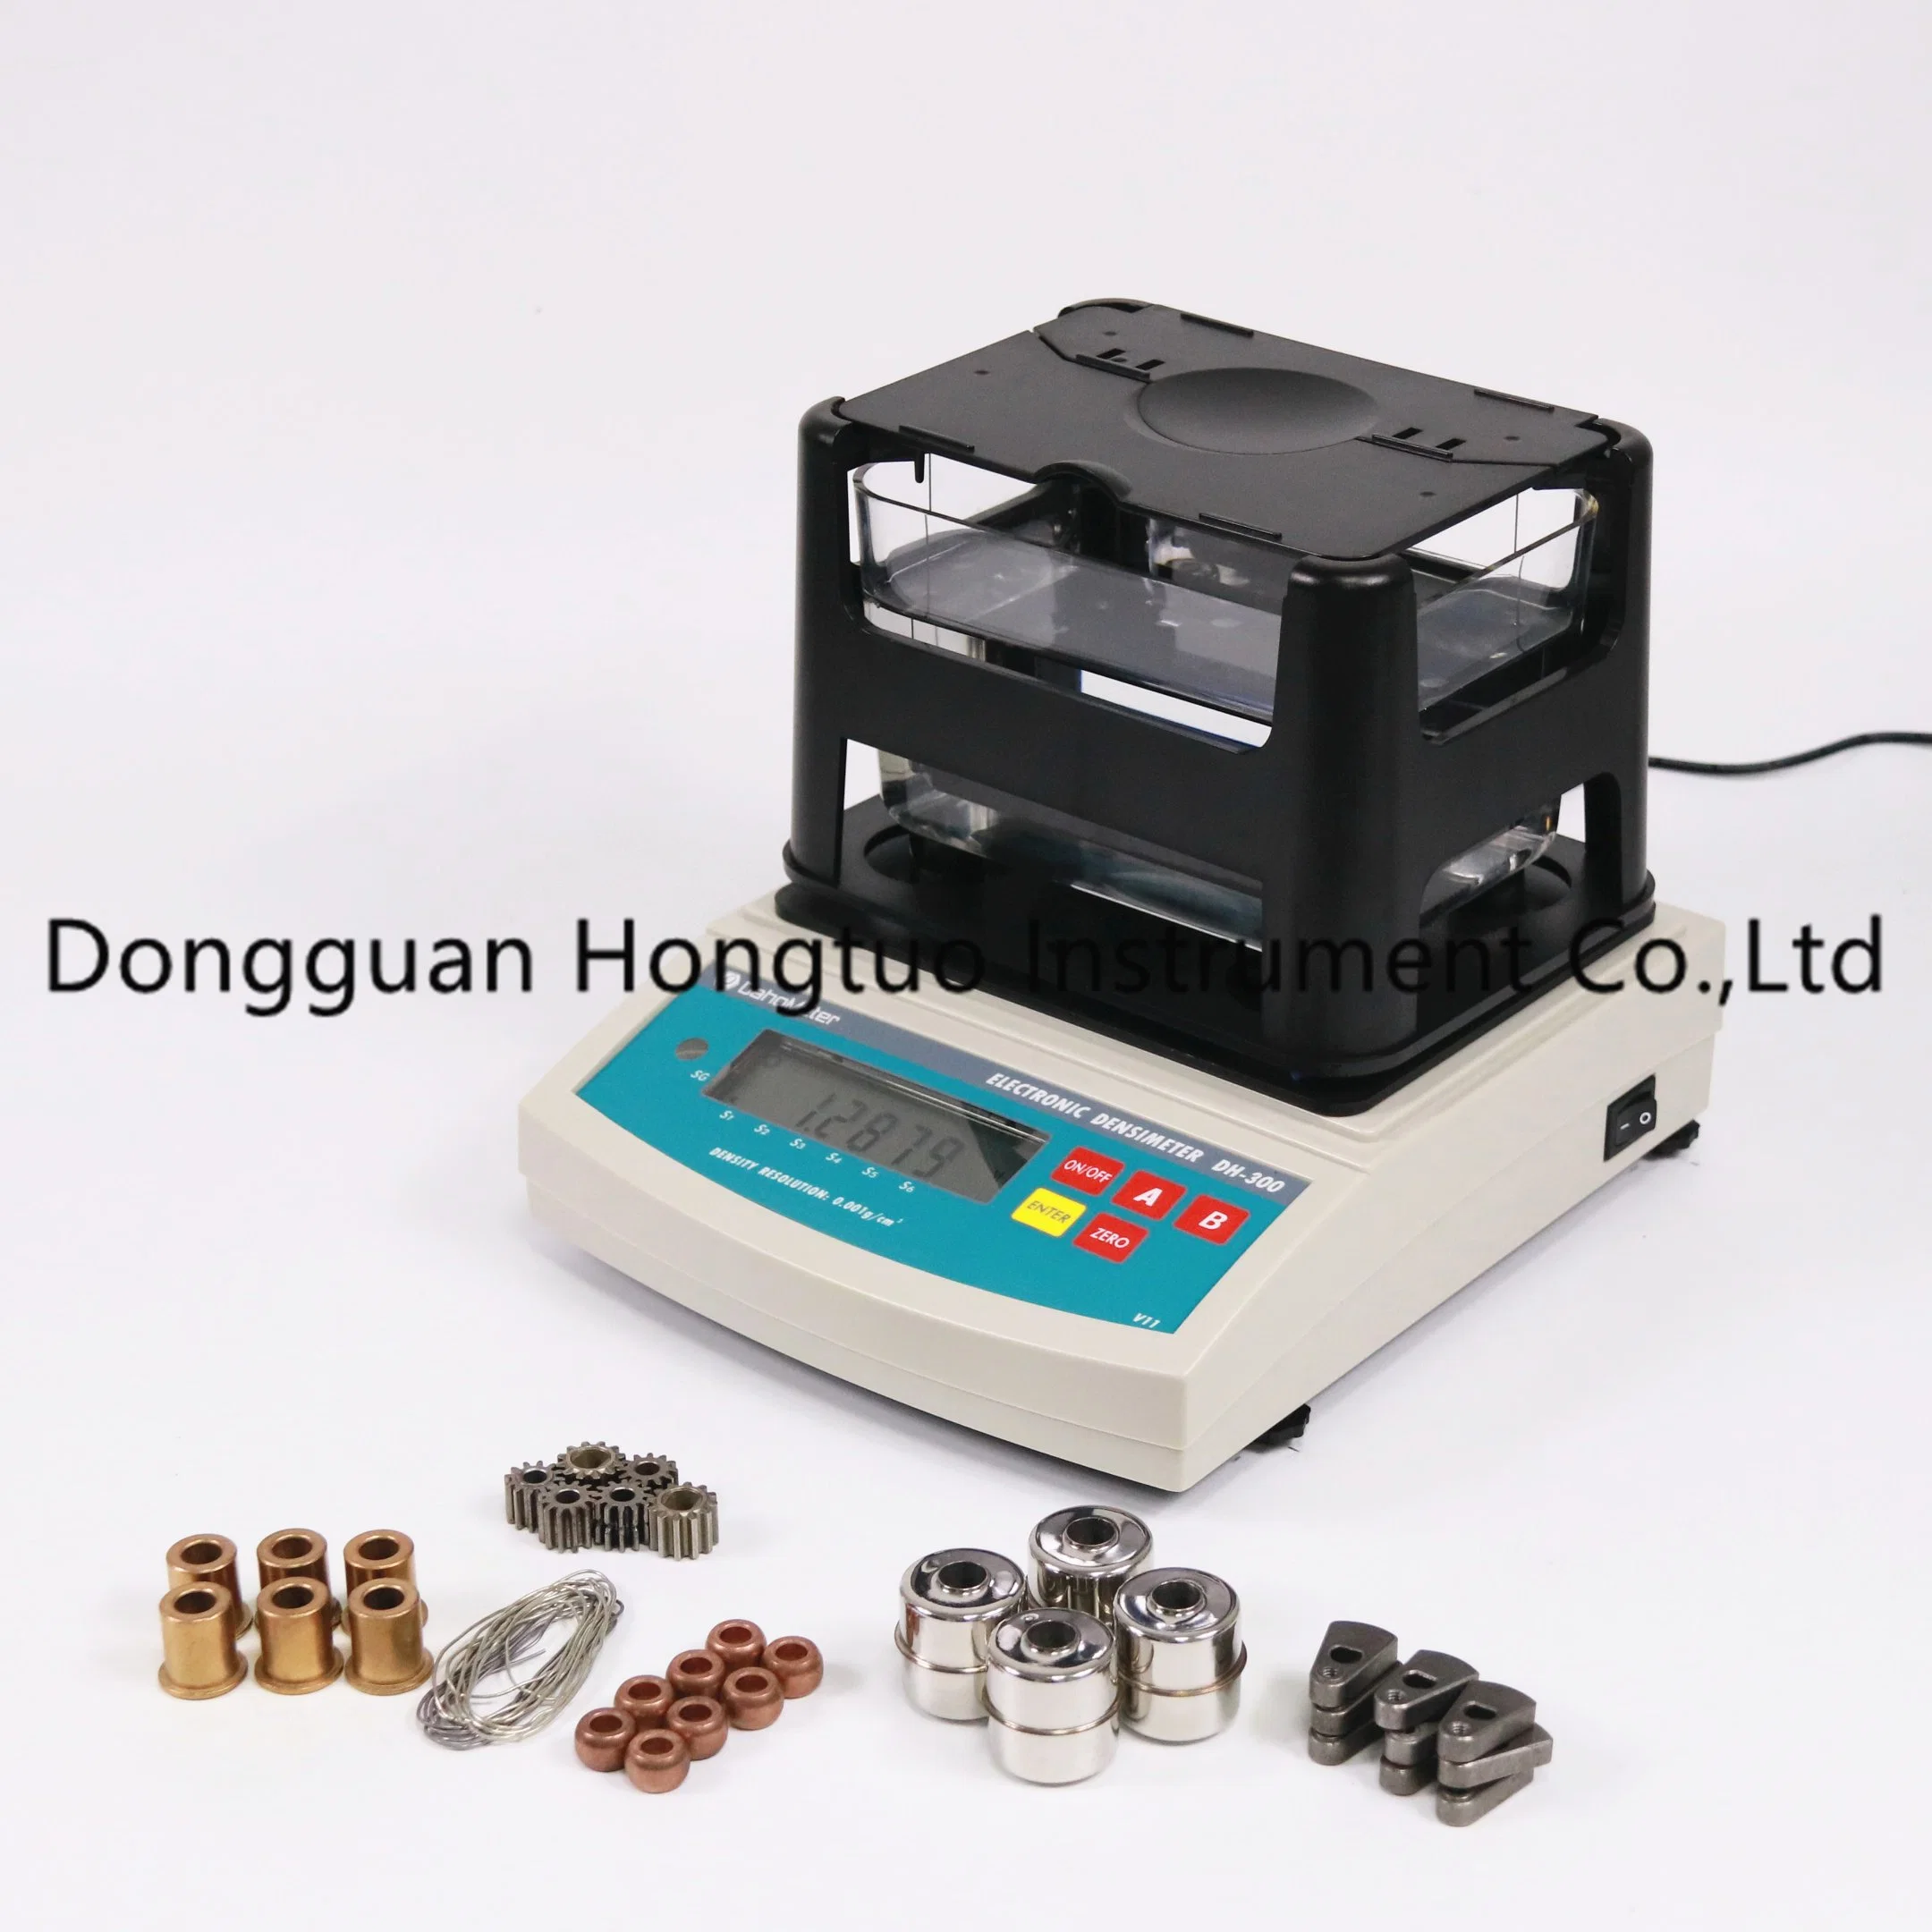 DH-1200 le densimètre numérique électronique de premier fabricant professionnel